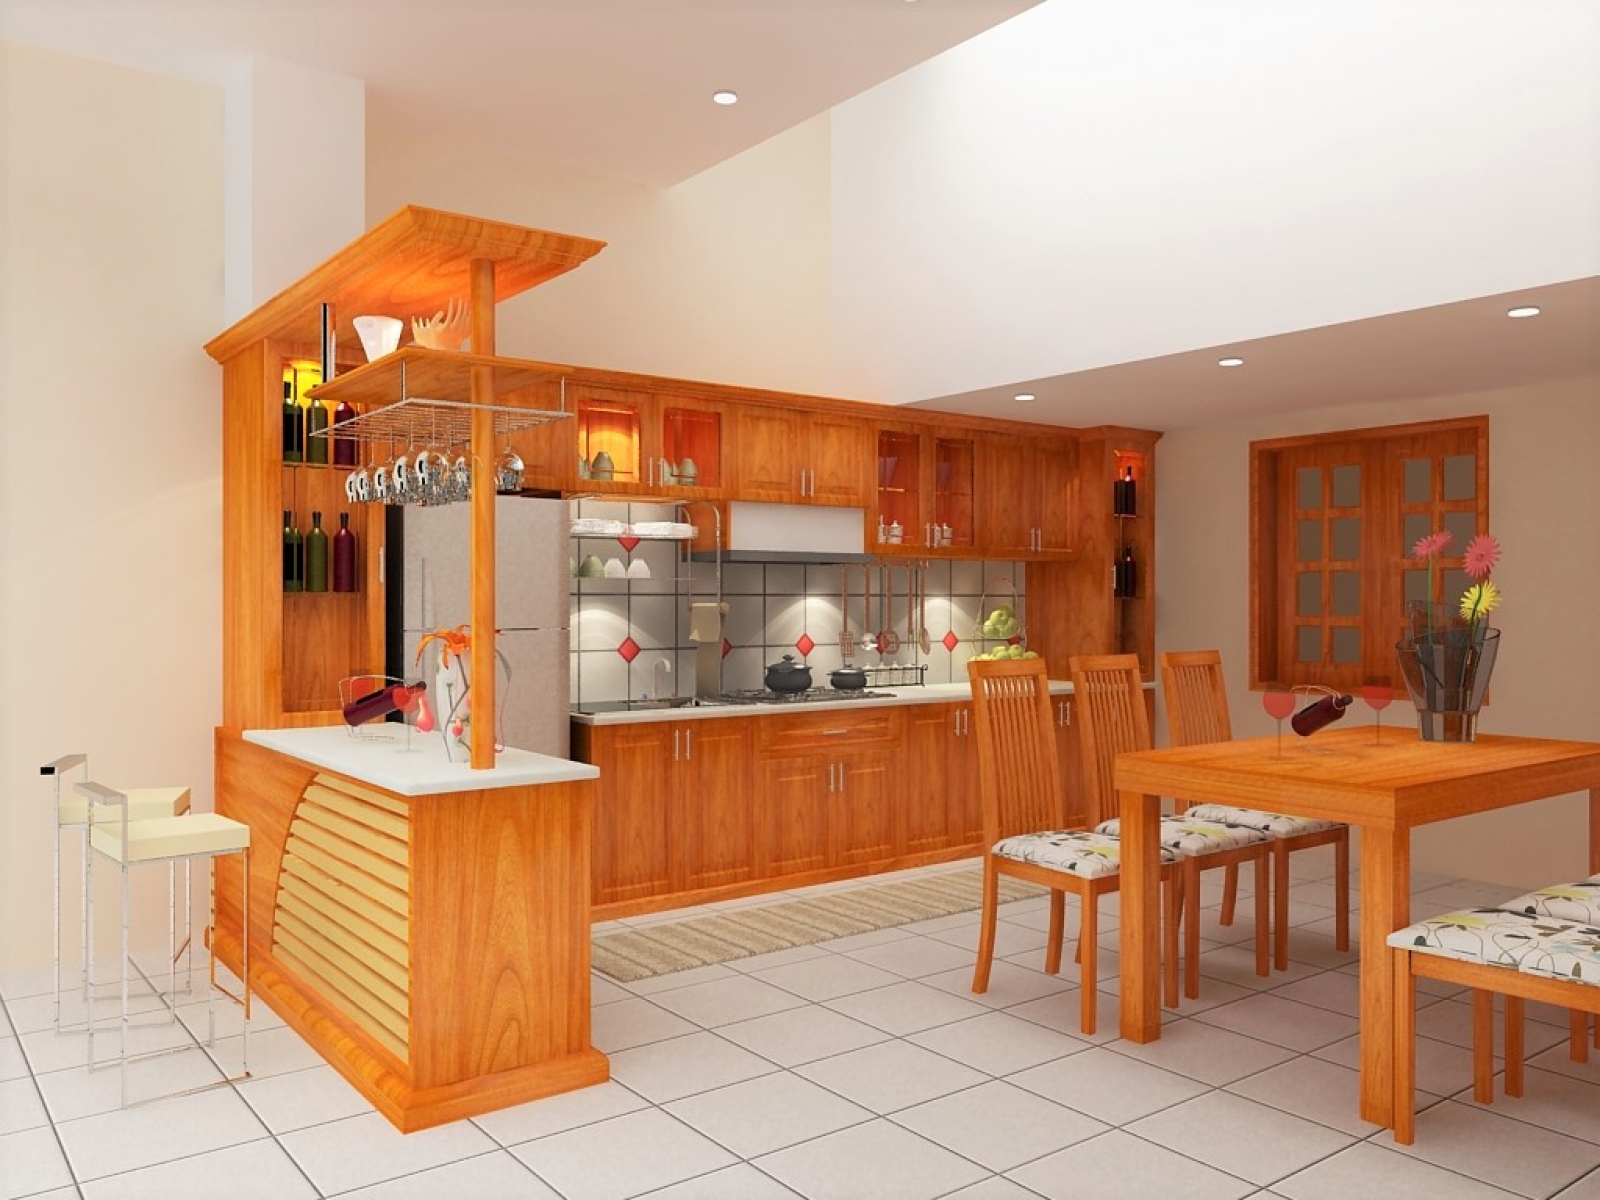 Tủ bếp gỗ xoan đào là sự lựa chọn tuyệt vời để tăng sự sang trọng và ấm áp cho căn bếp của bạn. Xem hình ảnh để hiểu rõ hơn về độ đẹp và sự tinh tế của tủ bếp gỗ xoan đào.